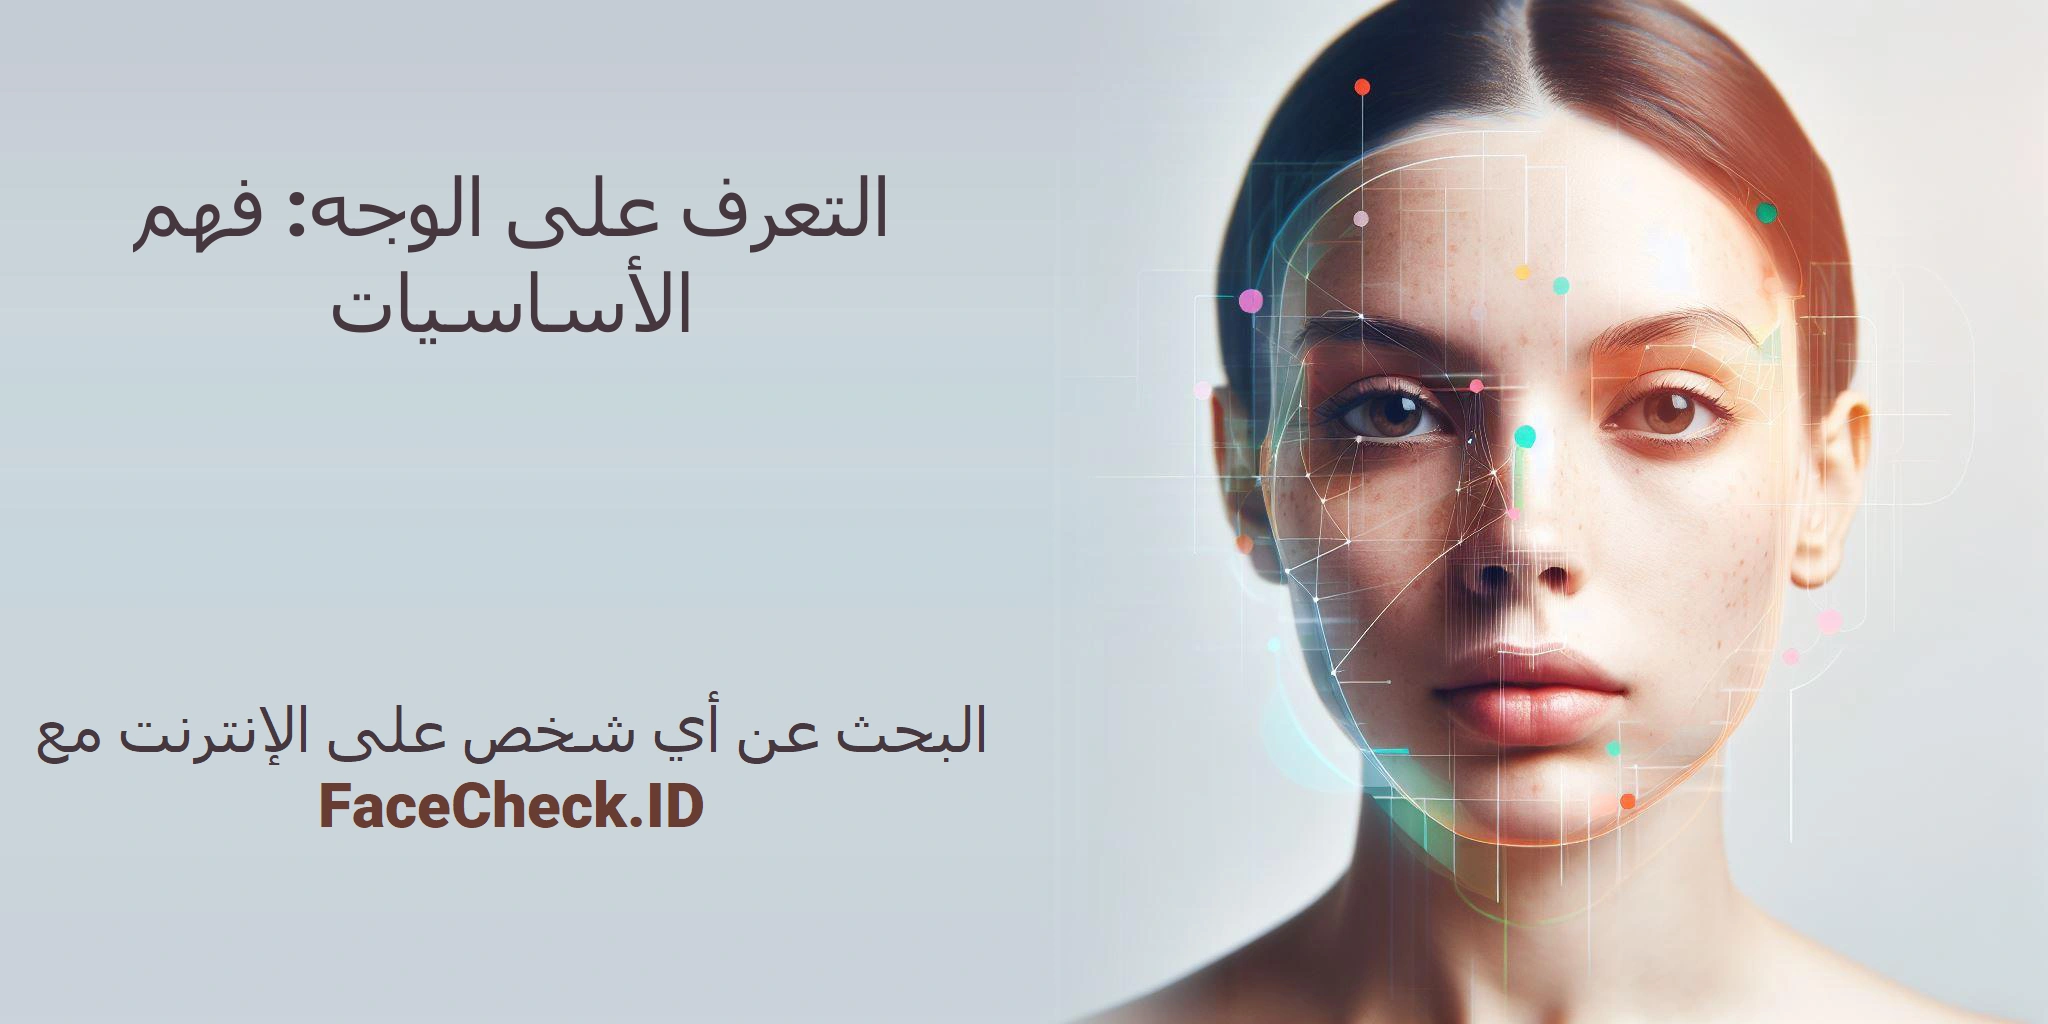 التعرف على الوجه: فهم الأساسيات البحث عن أي شخص على الإنترنت مع FaceCheck.ID